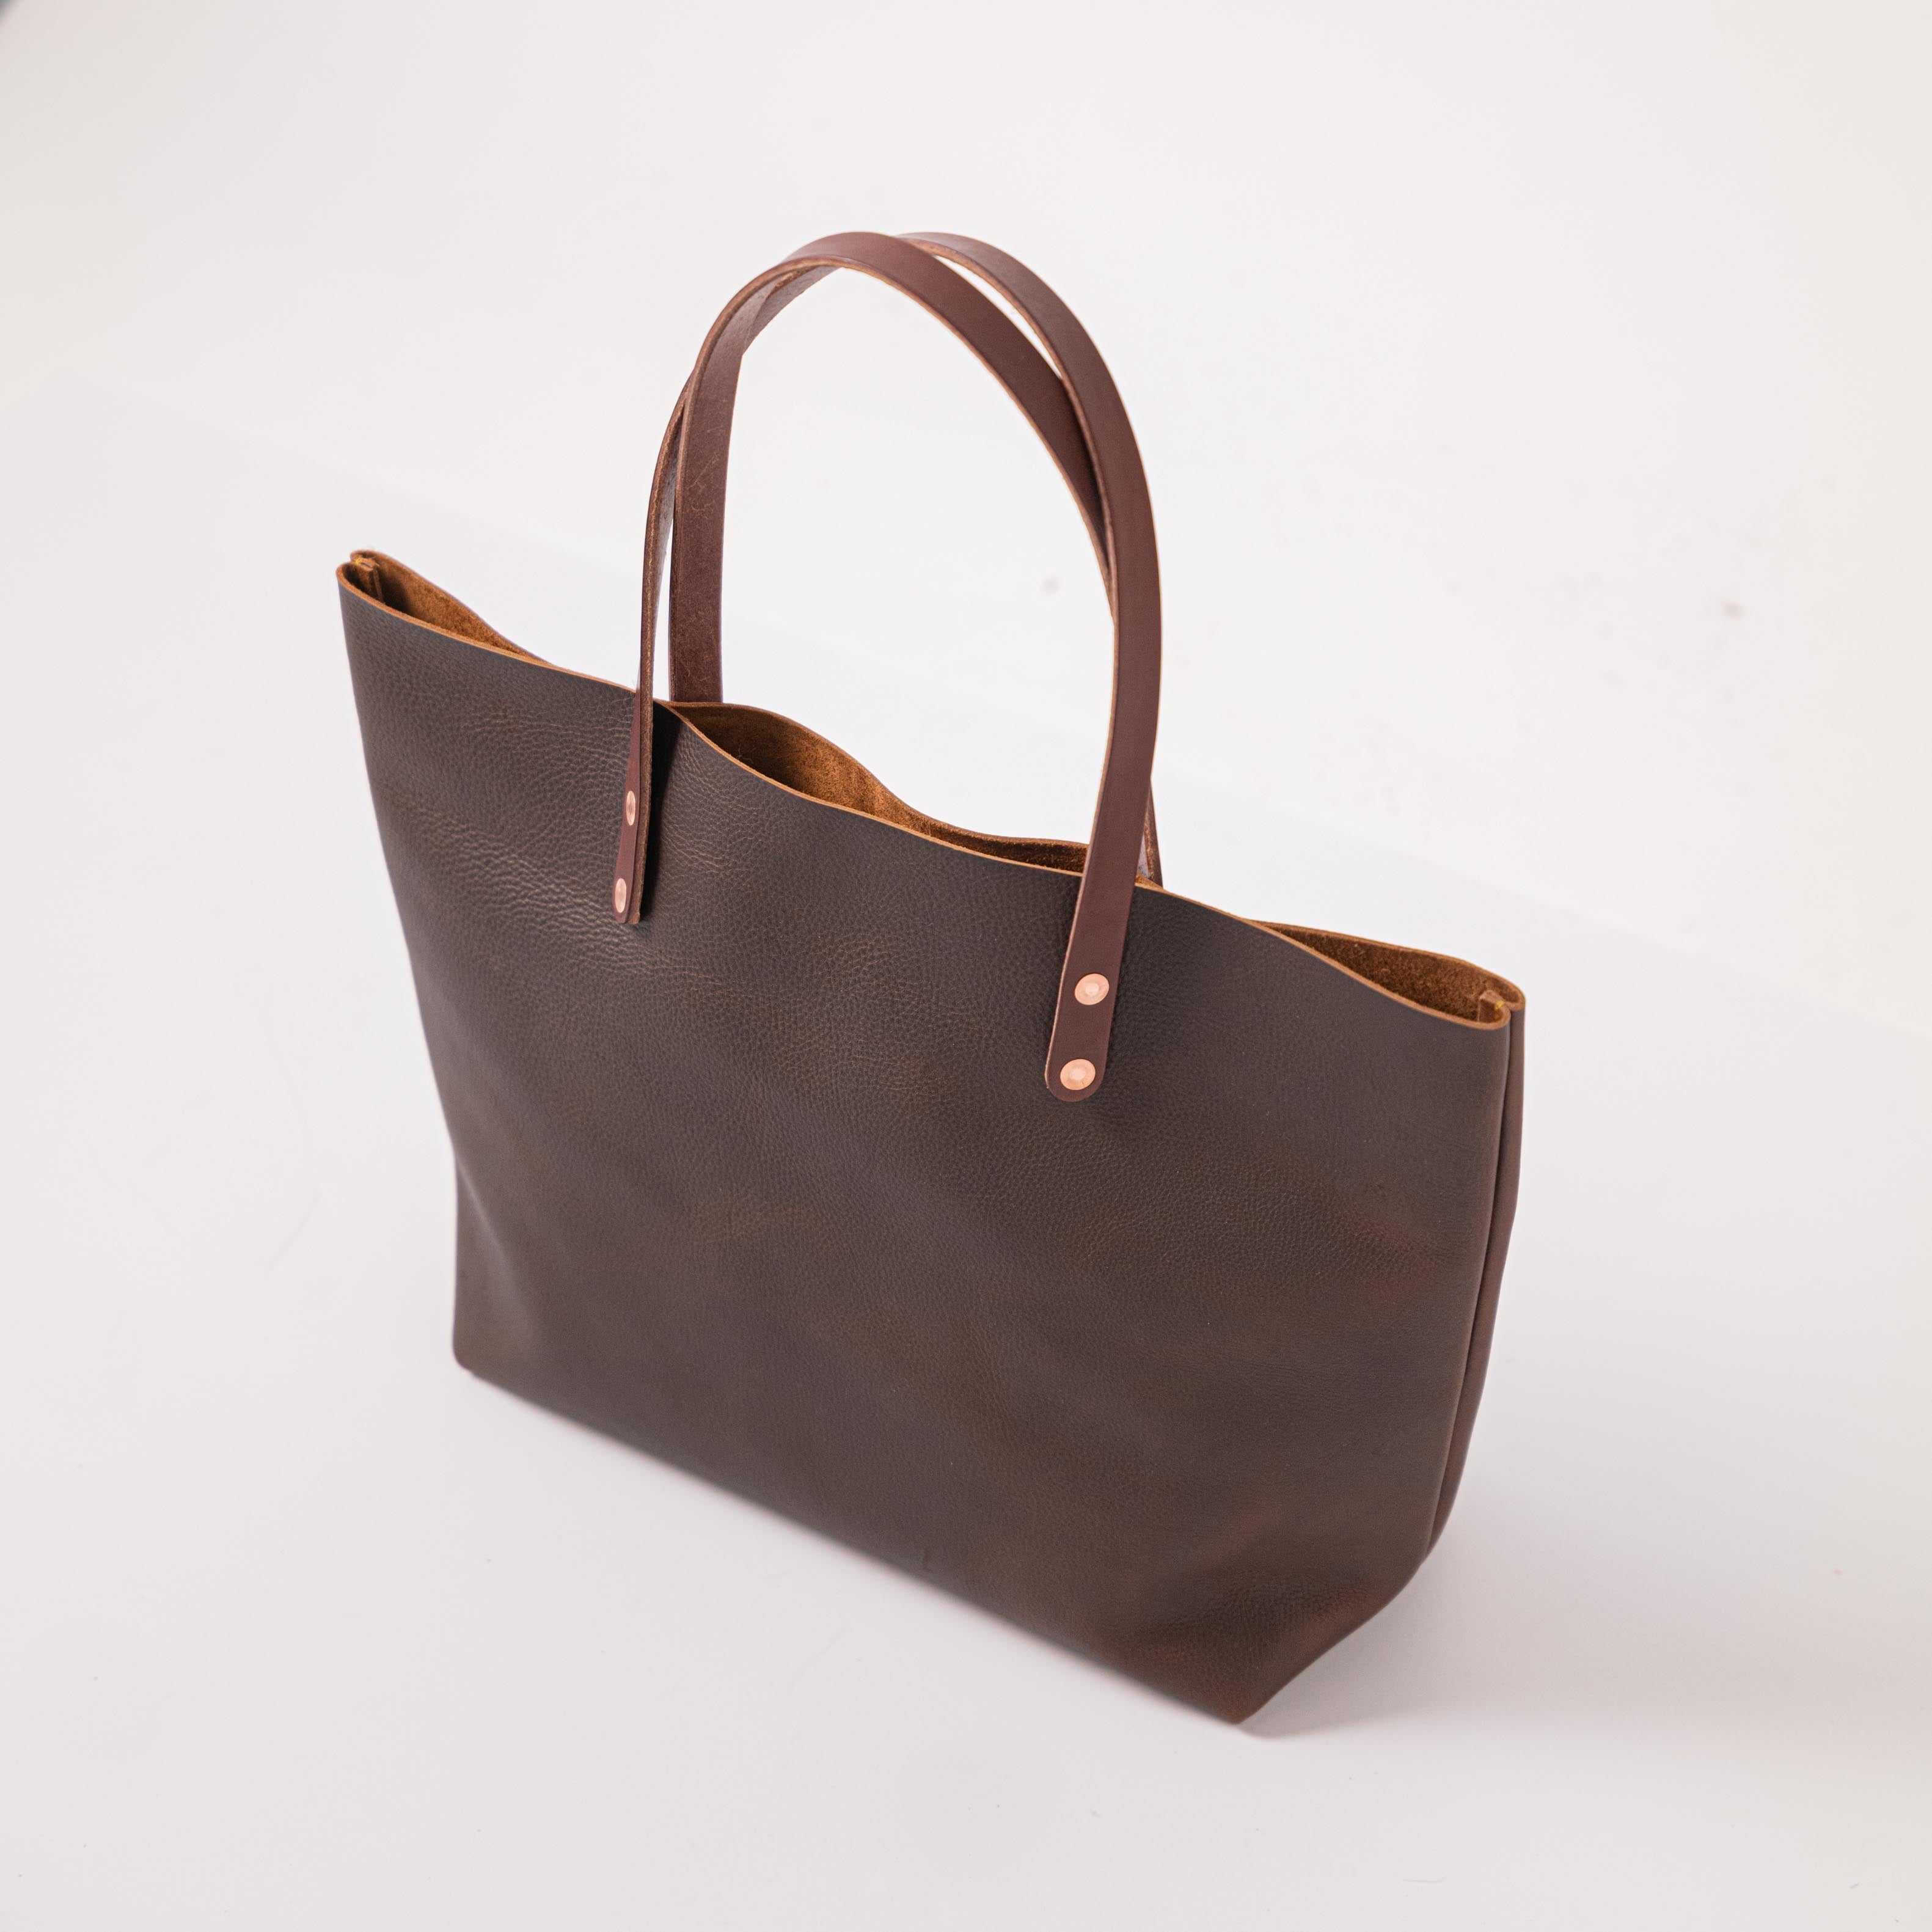 Brown Kodiak East West Tote- brown tote bag handmade in America